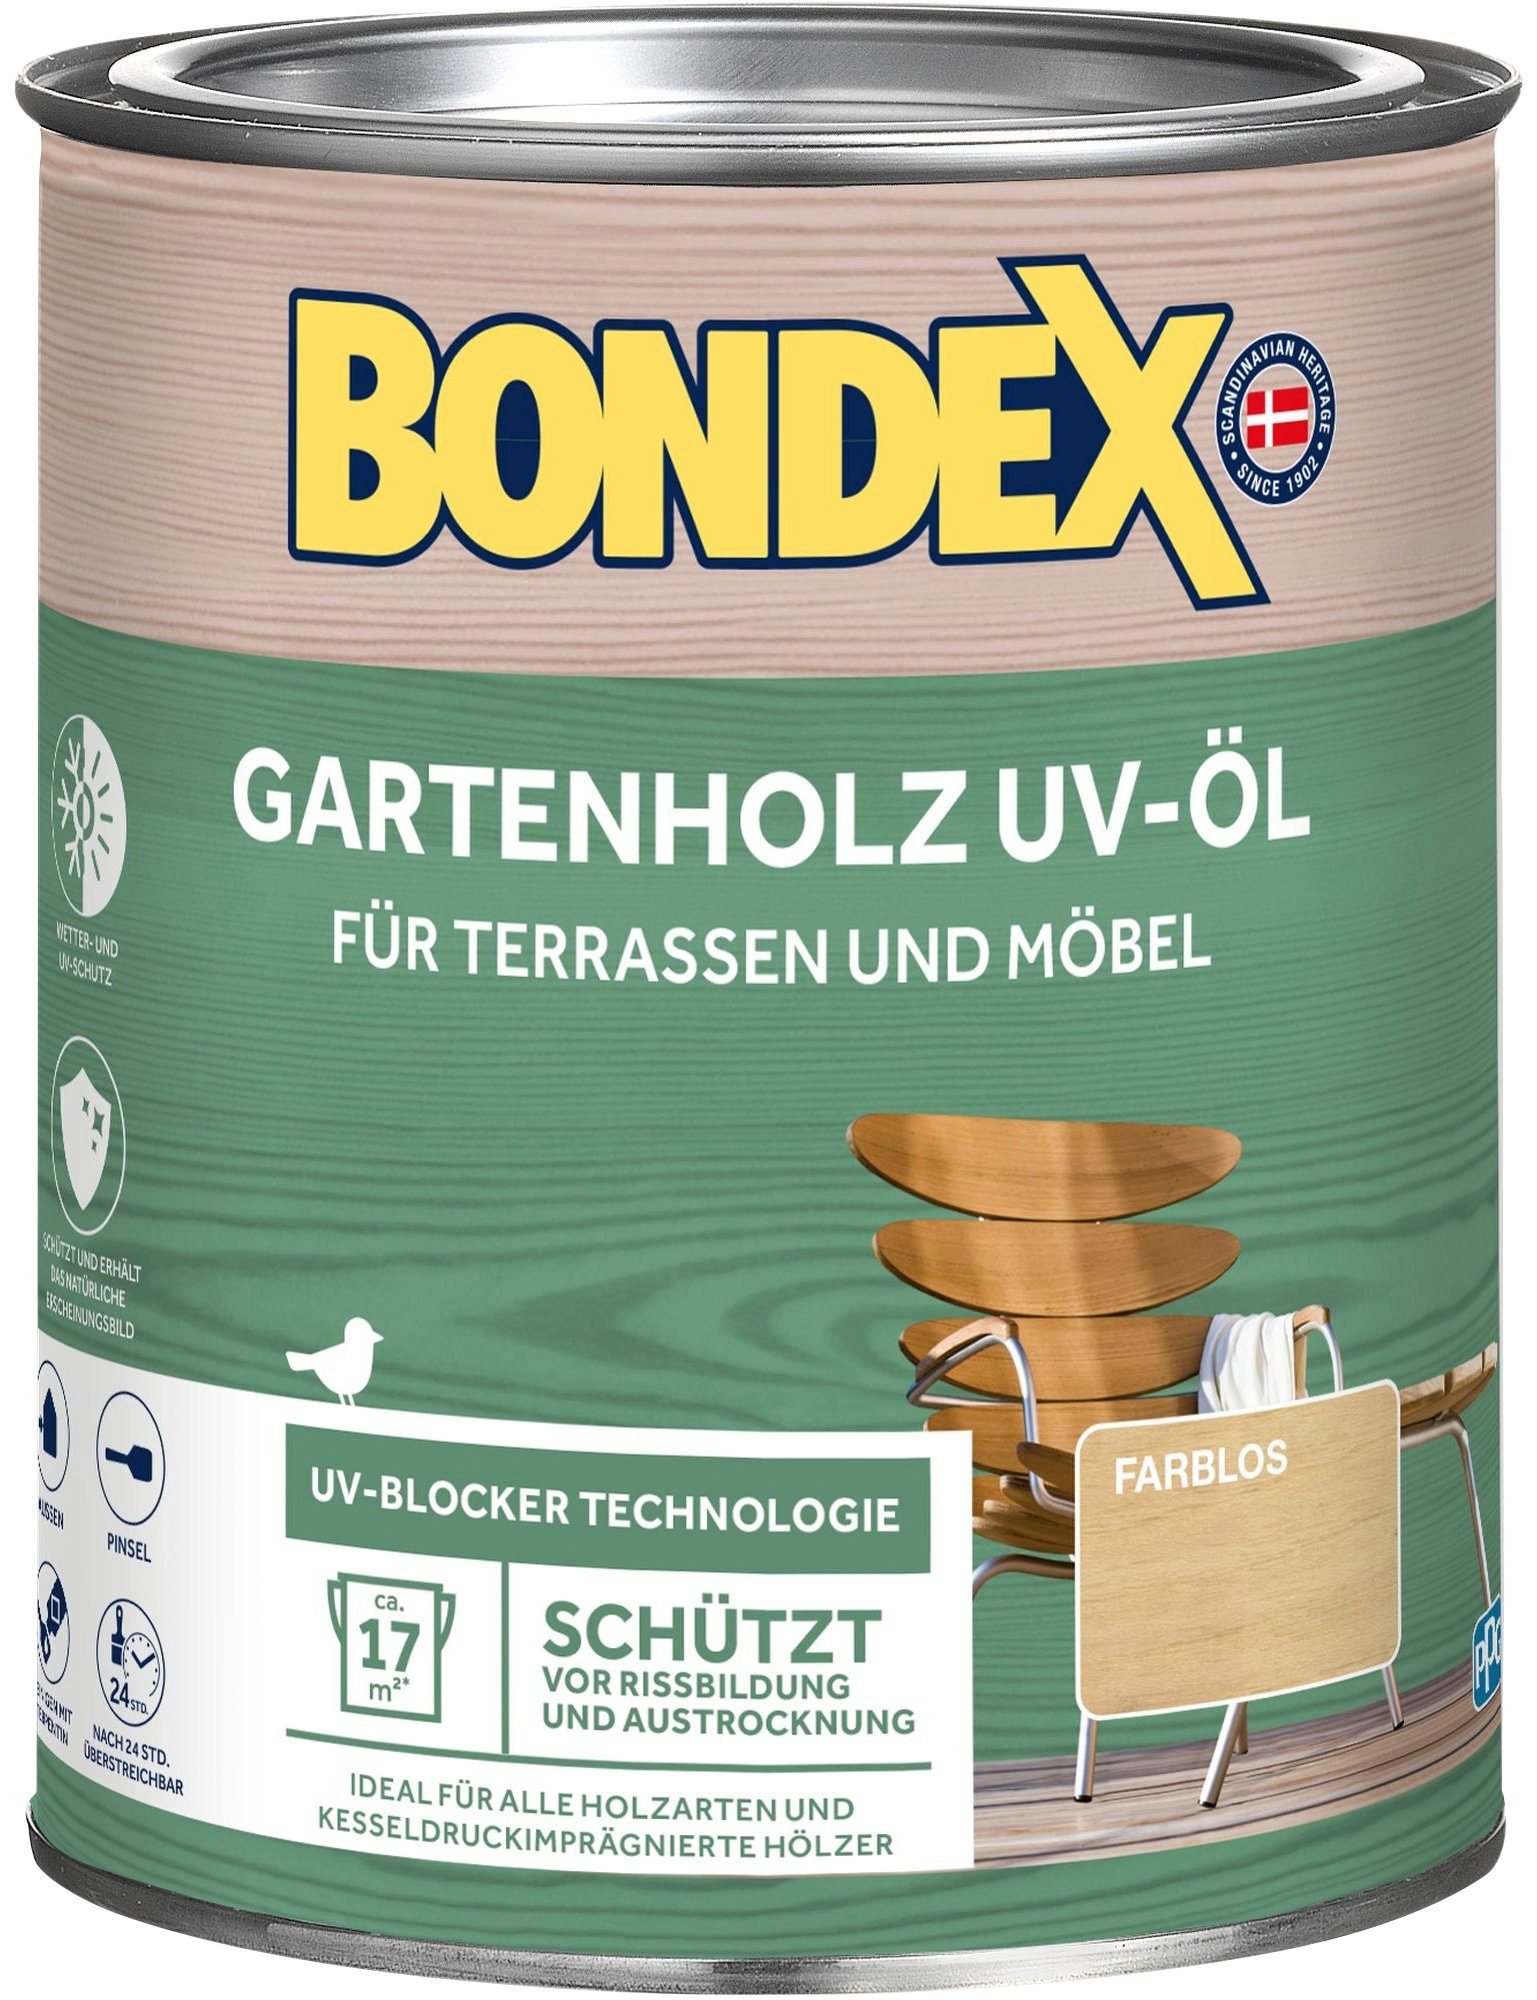 0,75 Farblos, GARTENHOLZ Inhalt UV-ÖL, Holzöl Liter Bondex